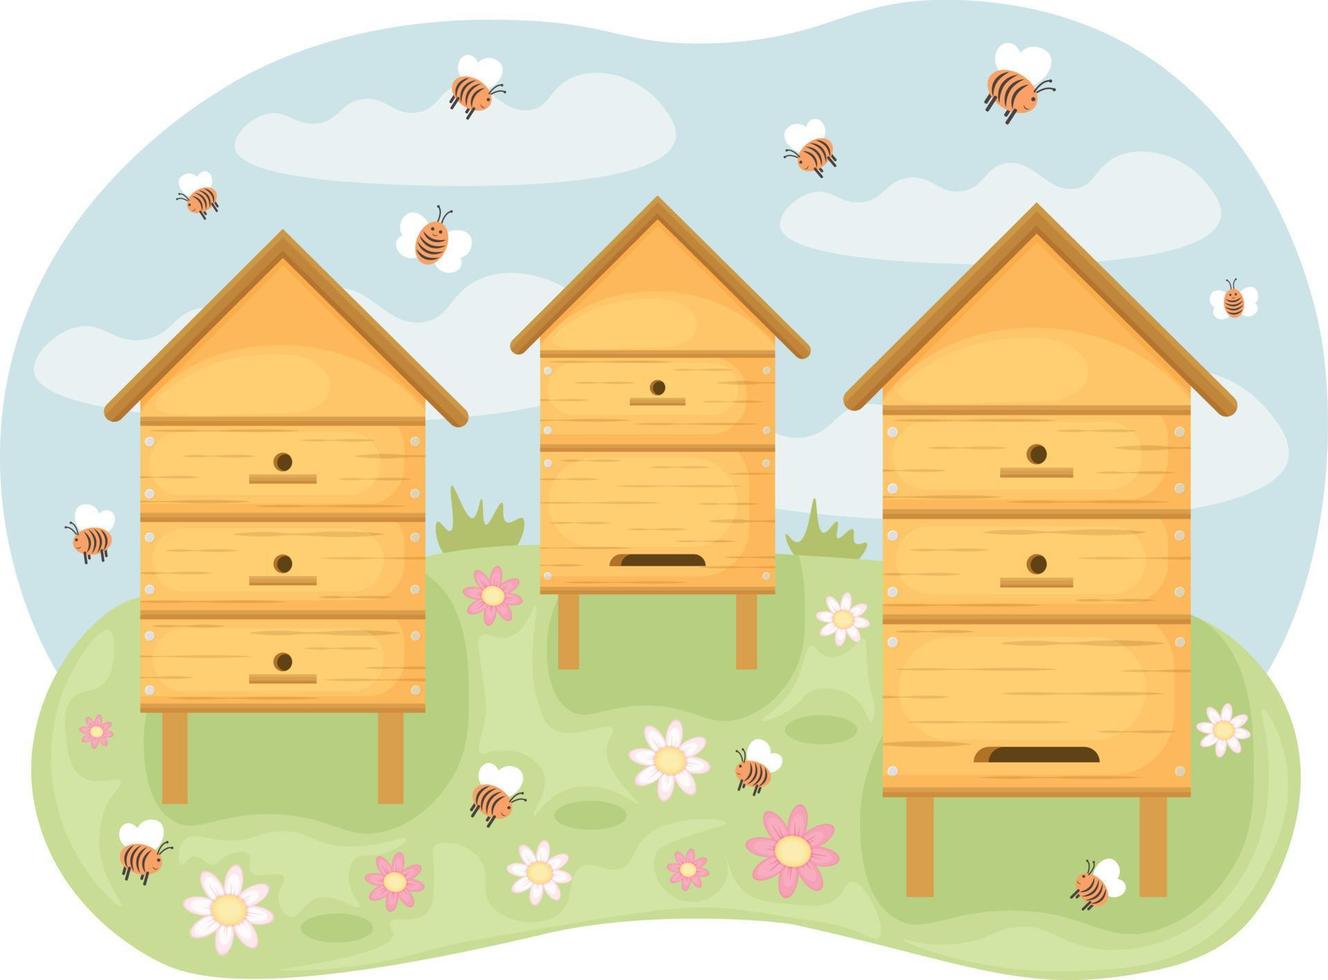 Bienenstöcke mit Bienen im ein Clearing. Frühling Illustration abbilden hölzern Bienenstöcke Stehen im ein Clearing und Bienen fliegend um ihnen. Blume Wiese mit Bienenstöcke. Vektor